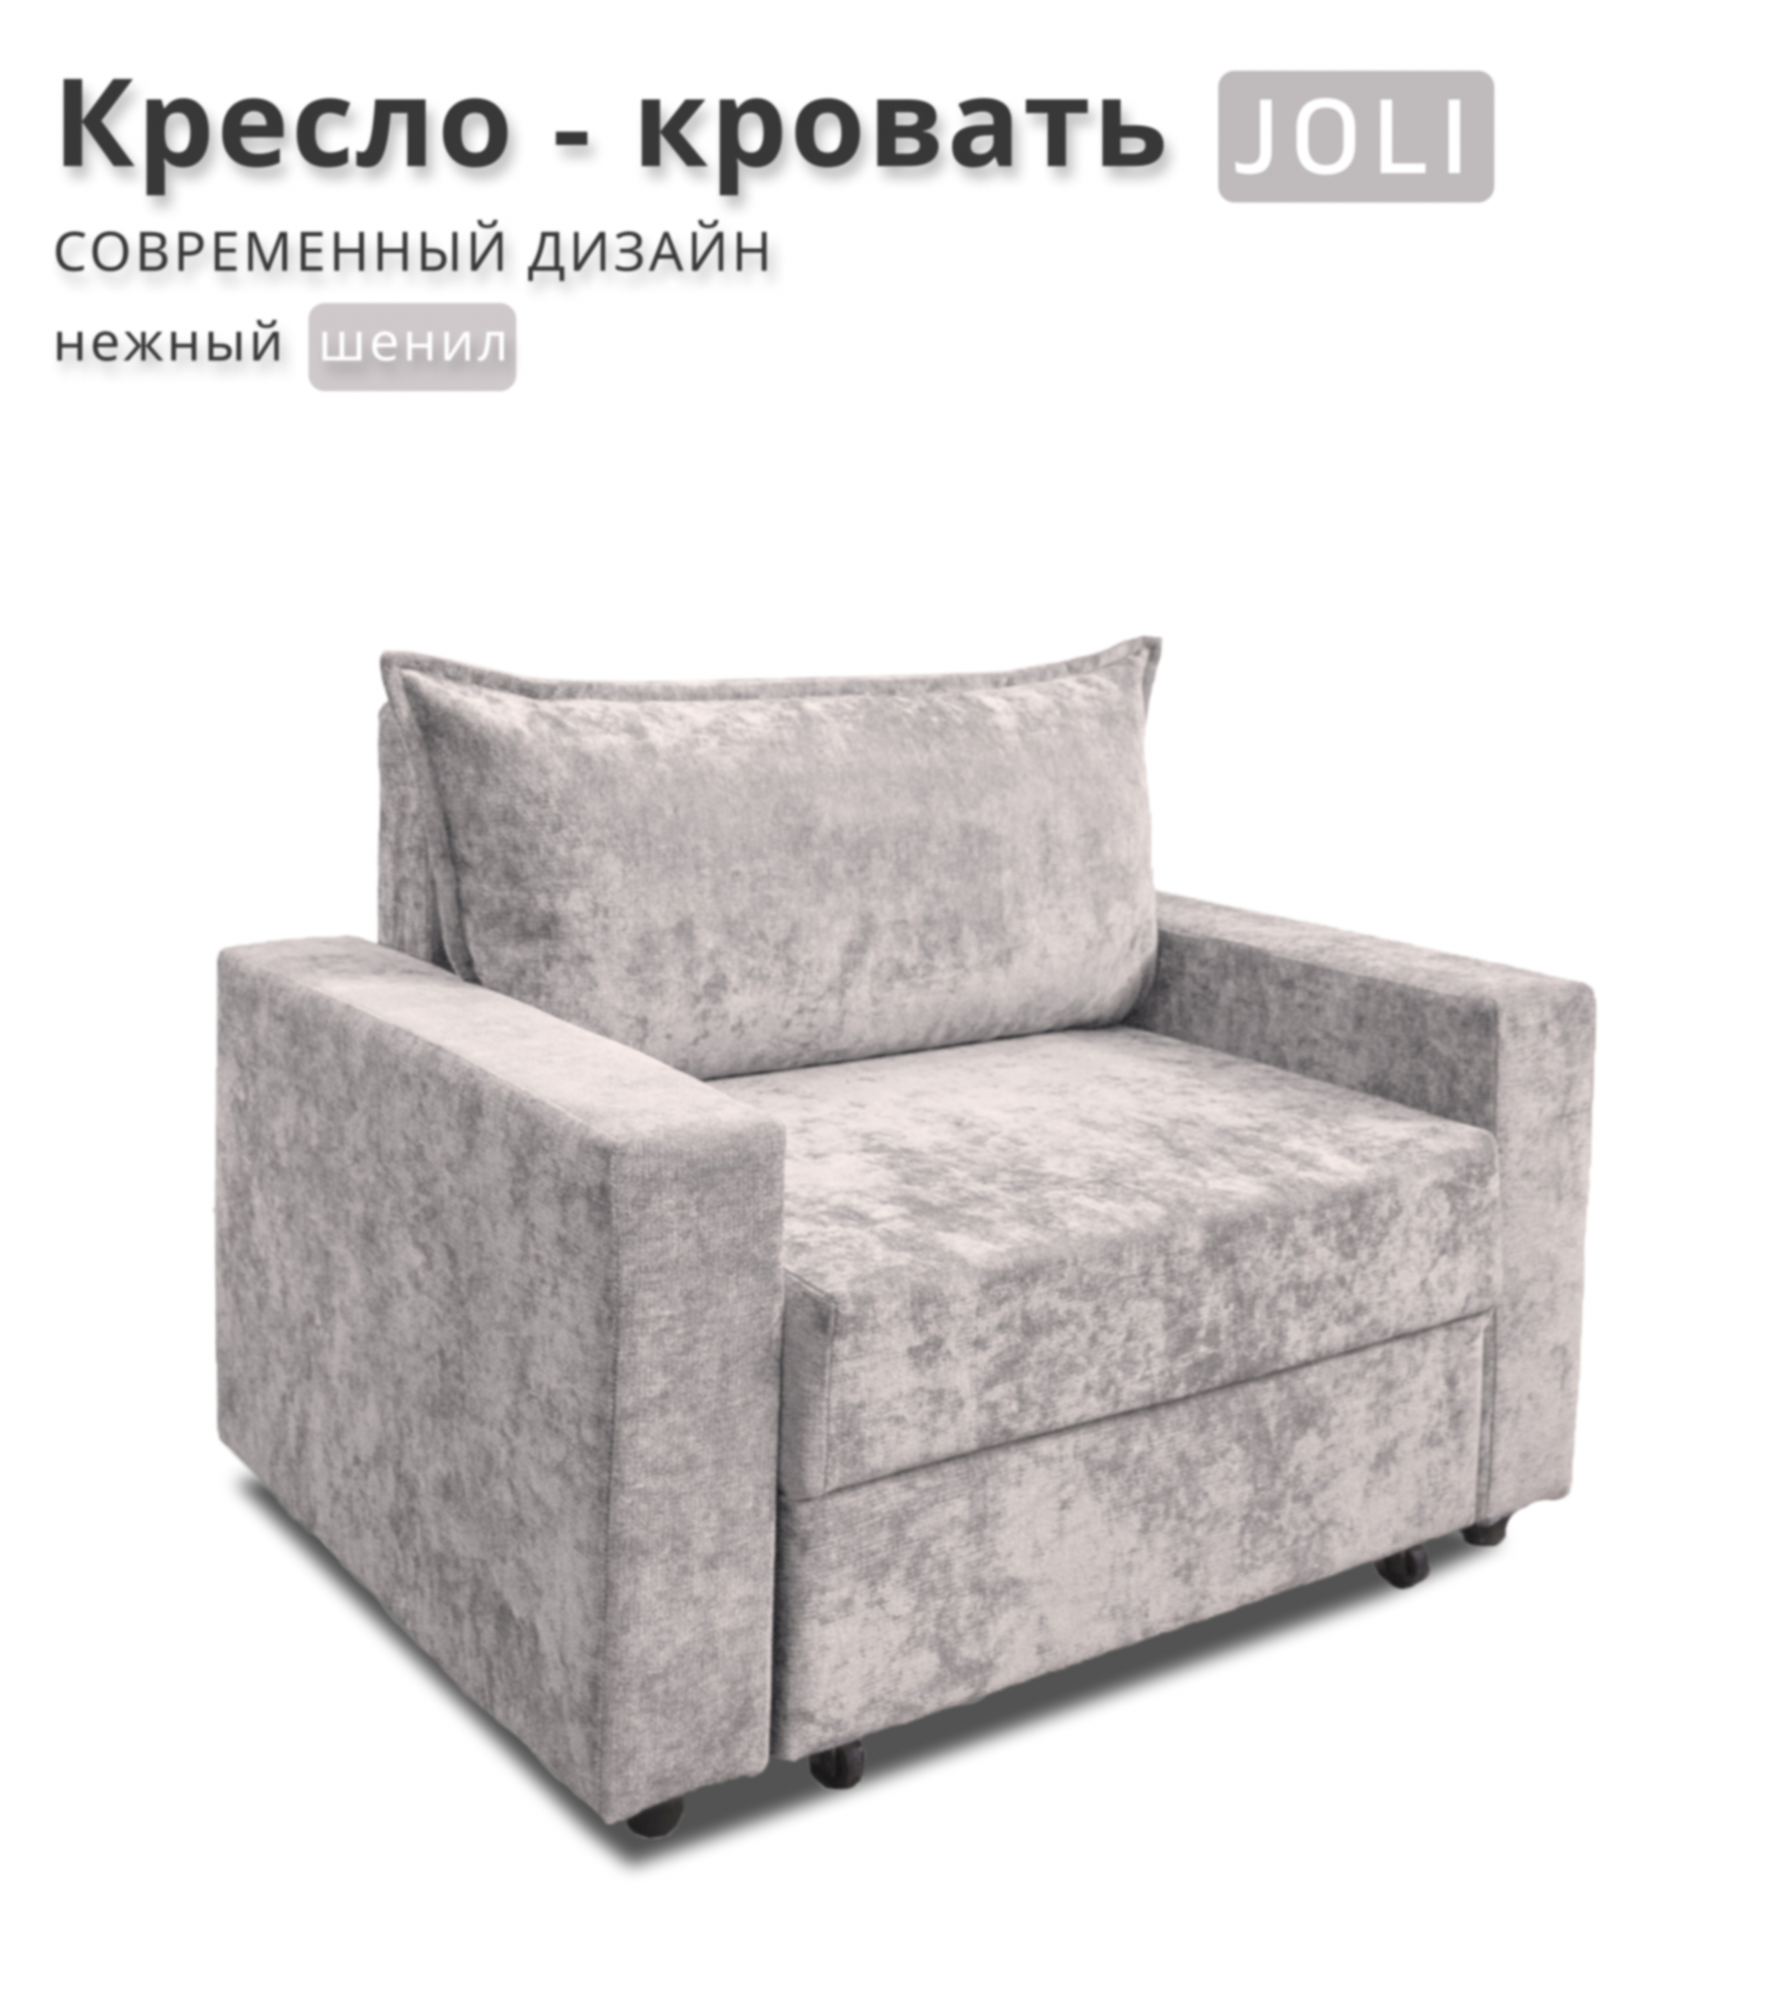 Кресло-кровать JOLI, шенилл, серый